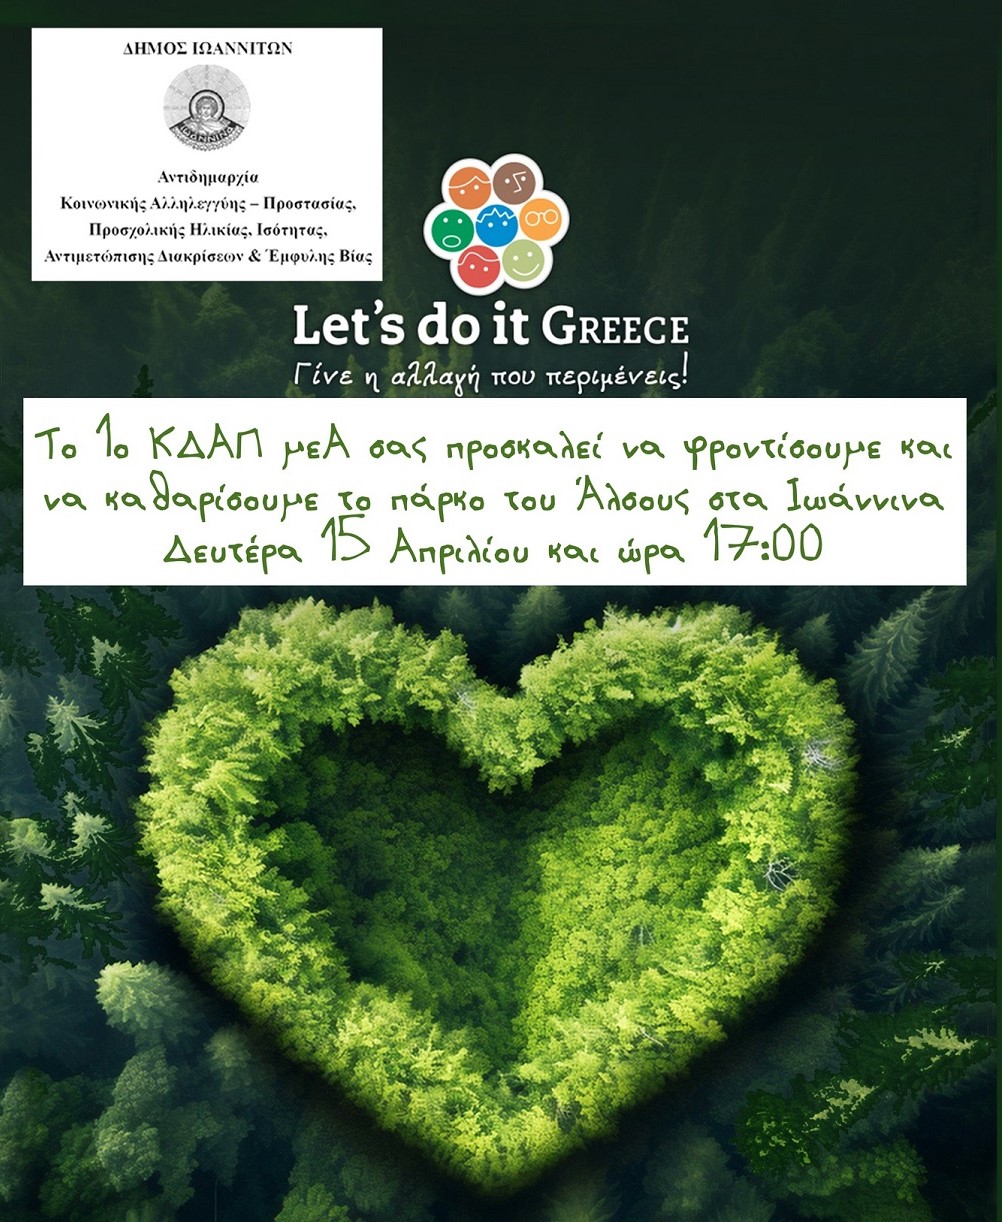 Ο δήμος Ιωαννιτών συμμετέχει στη δράση Let’s do it Greece